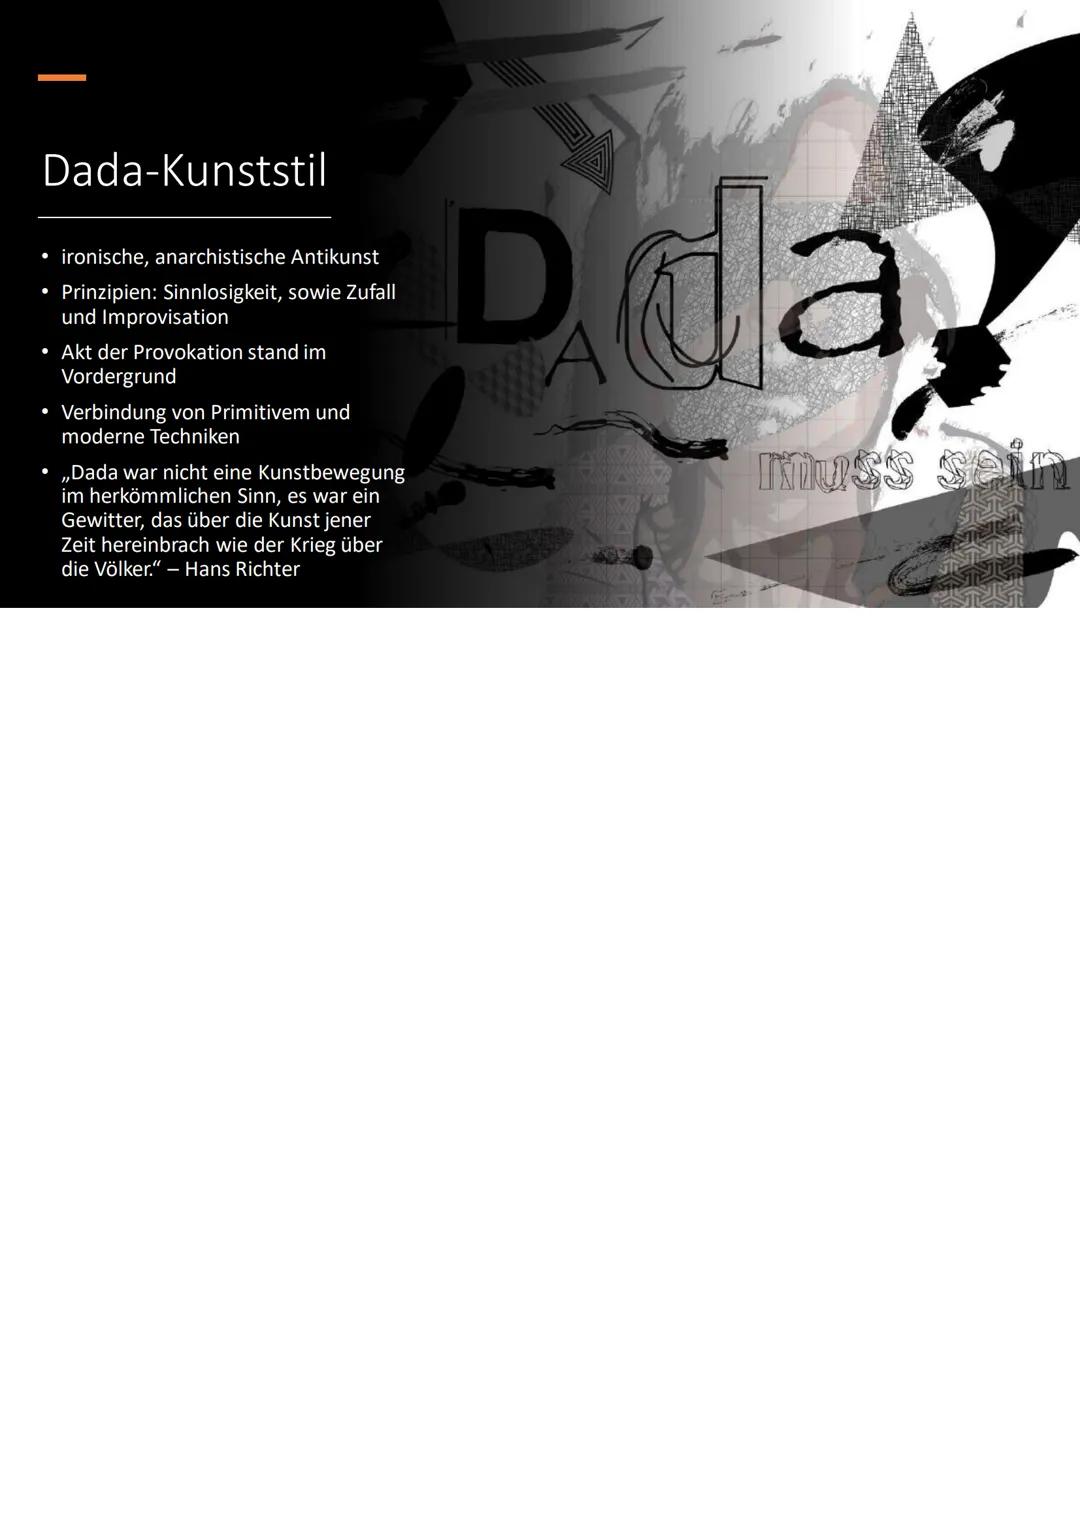 Der Dadaismus und Marcel
Duchamp Inhalt
• Dadaismus
Dada-Bewegung
- Dada-Kunststil
- "Ready-Mades"
• Marcel Duchamp
- Biographie und künstle